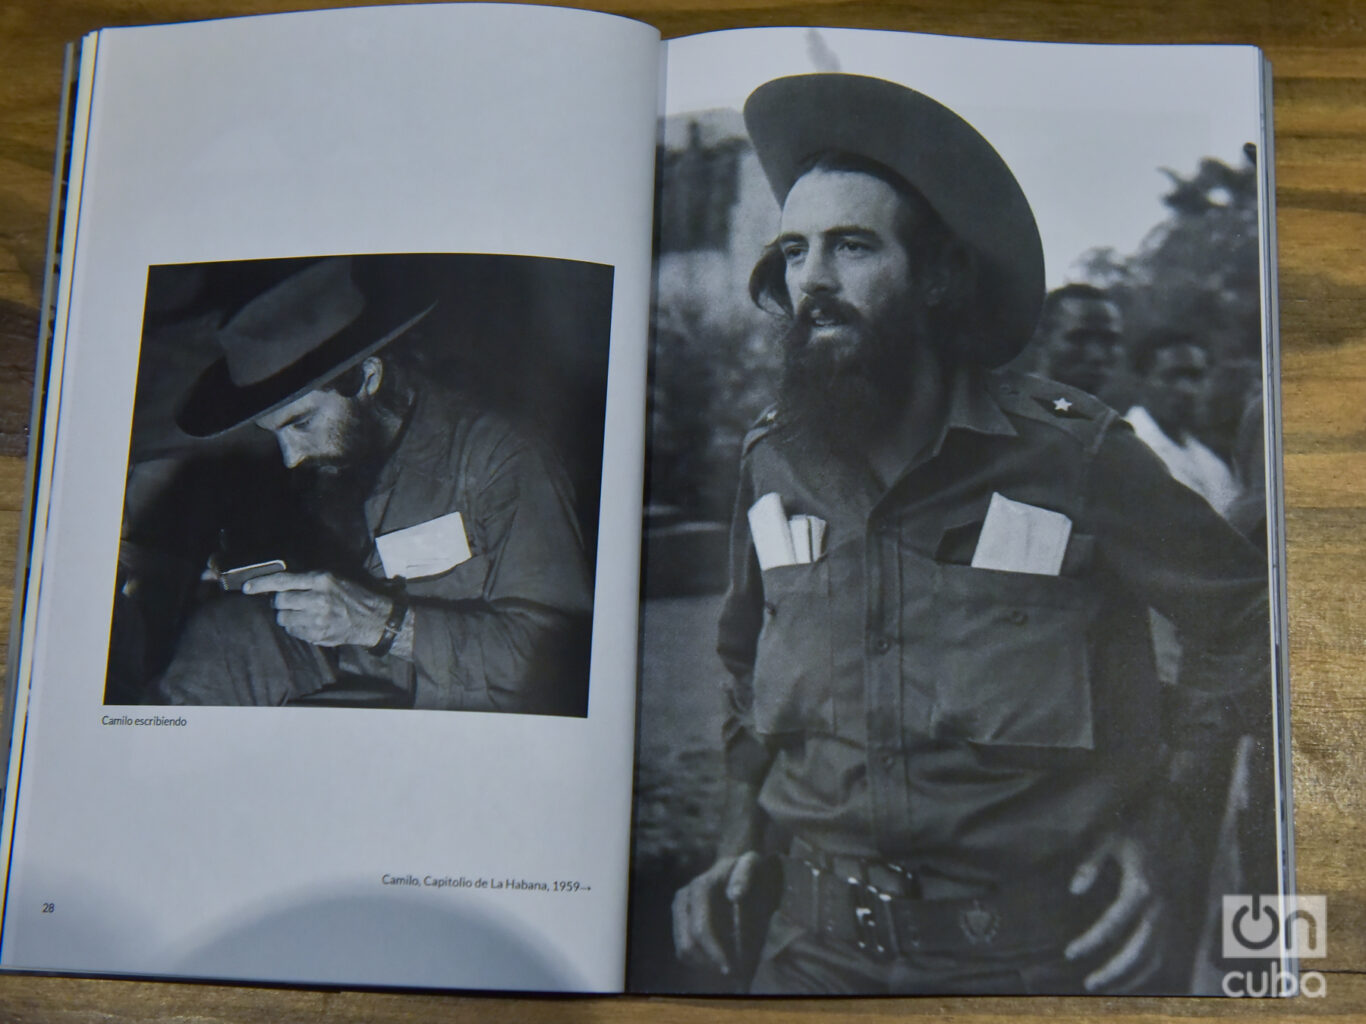 Camilo Cienfuegos en los años 58-59 captado por el lente de Romero. Foto: Kaloian.